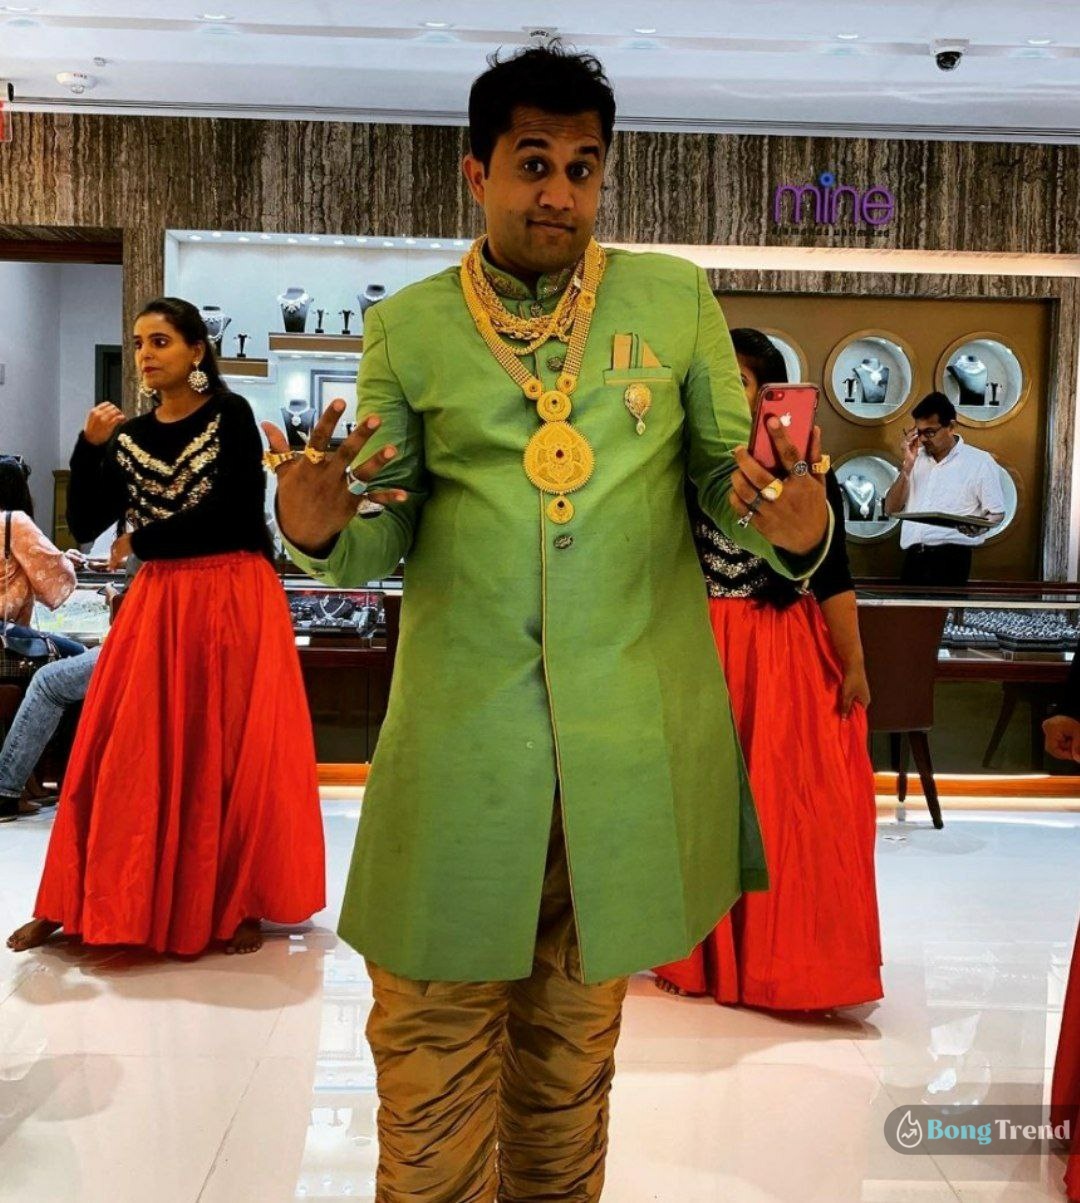 3 Idiots' Silencer,3 Idiots starring Aamir Khan,3 Idiots,Chatur Ramalingam,Chatur Ramalingam aka Ami Vaidya,থ্রি ইডিয়টসের ‘সাইলেন্সর’,আমির খান অভিনীত থ্রি ইডিয়টস,থ্রি ইডিয়টসে চতুর রামালিঙ্গম,চতুর রামালিঙ্গম ওরফে অমি বৈদ্য3 Idiots,Aamir Khan,Ami Vaidya,Bollywood,Prince Hirani,থ্রি ইডিয়টস,আমির খান,অমি বৈদ্য,বলিউড,রাজকুমার হিরানি